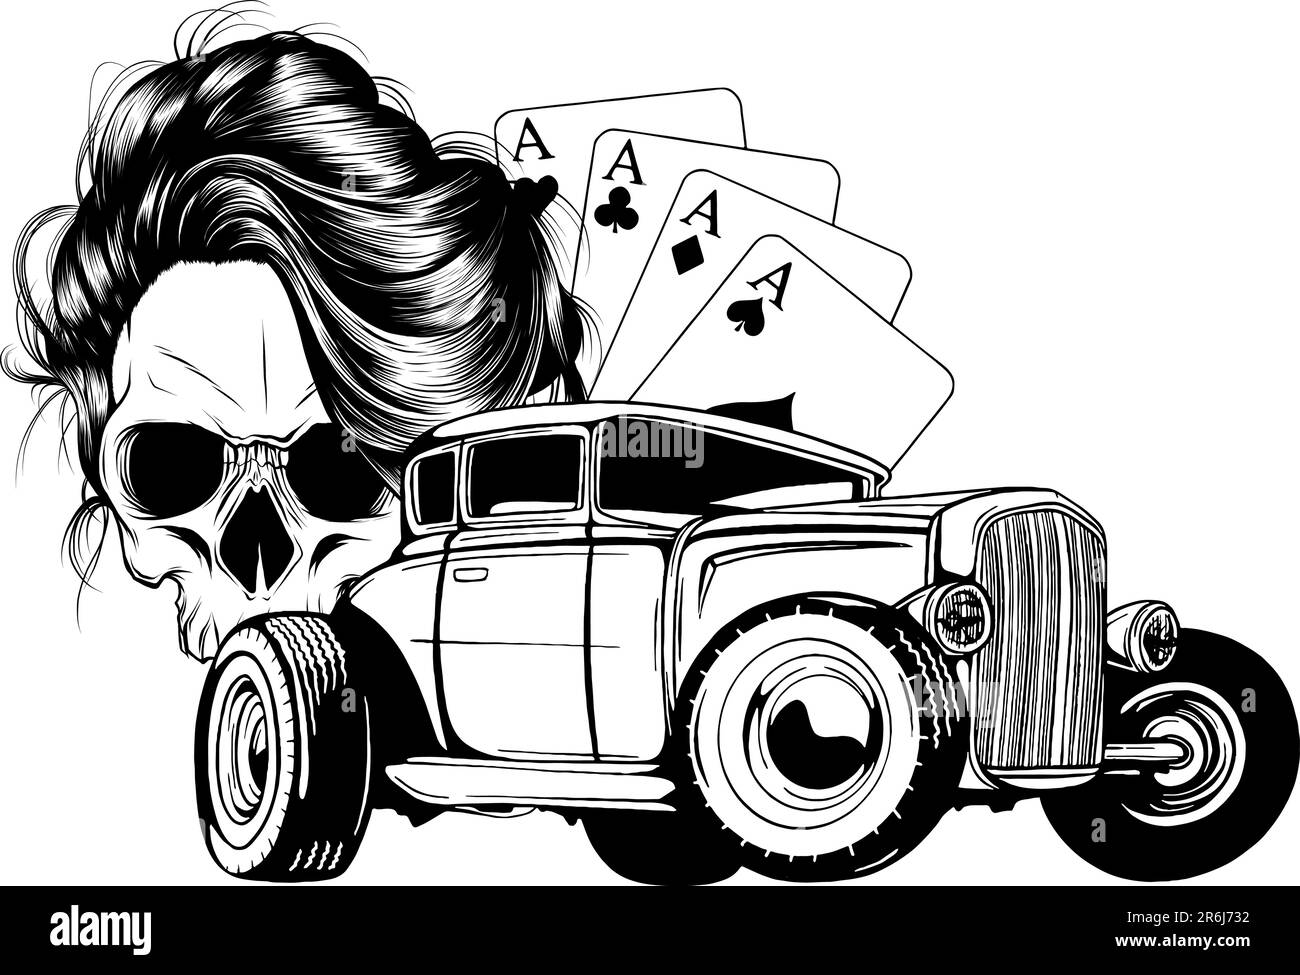 Illustration vectorielle du crâne monochrome avec tige chaude et as de poker sur fond blanc Illustration de Vecteur